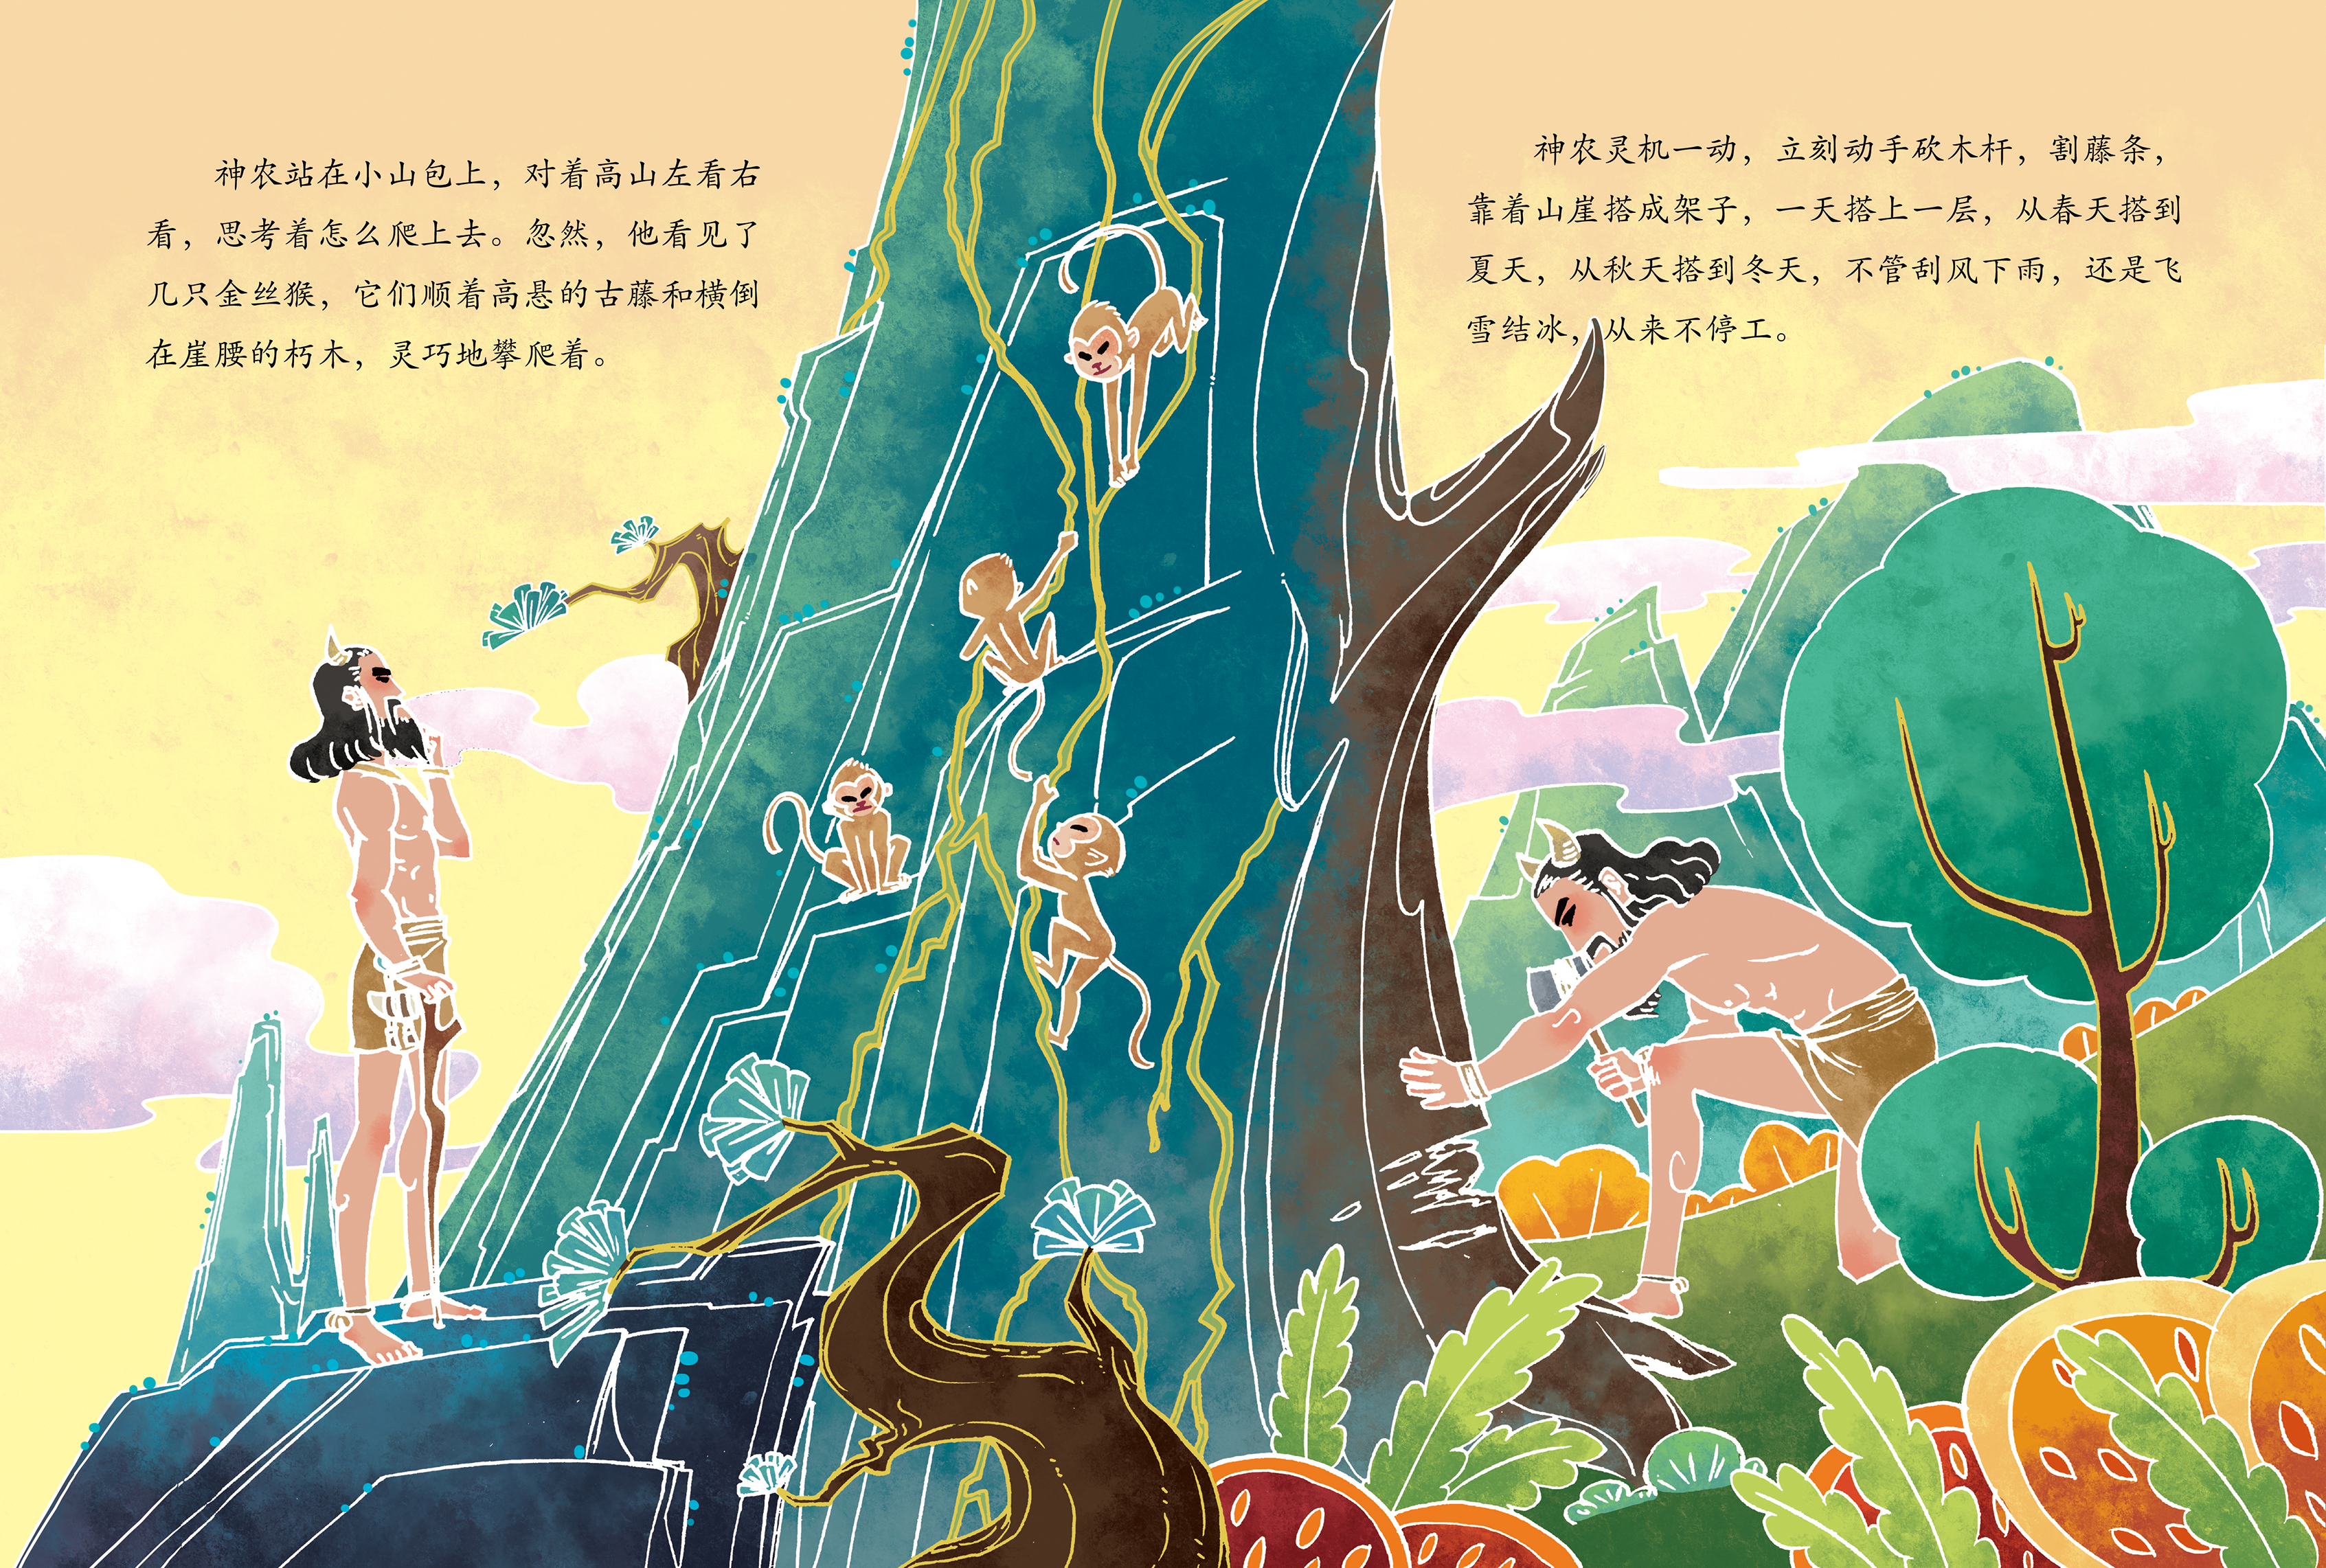 中国神话故事系列《神农尝百草》